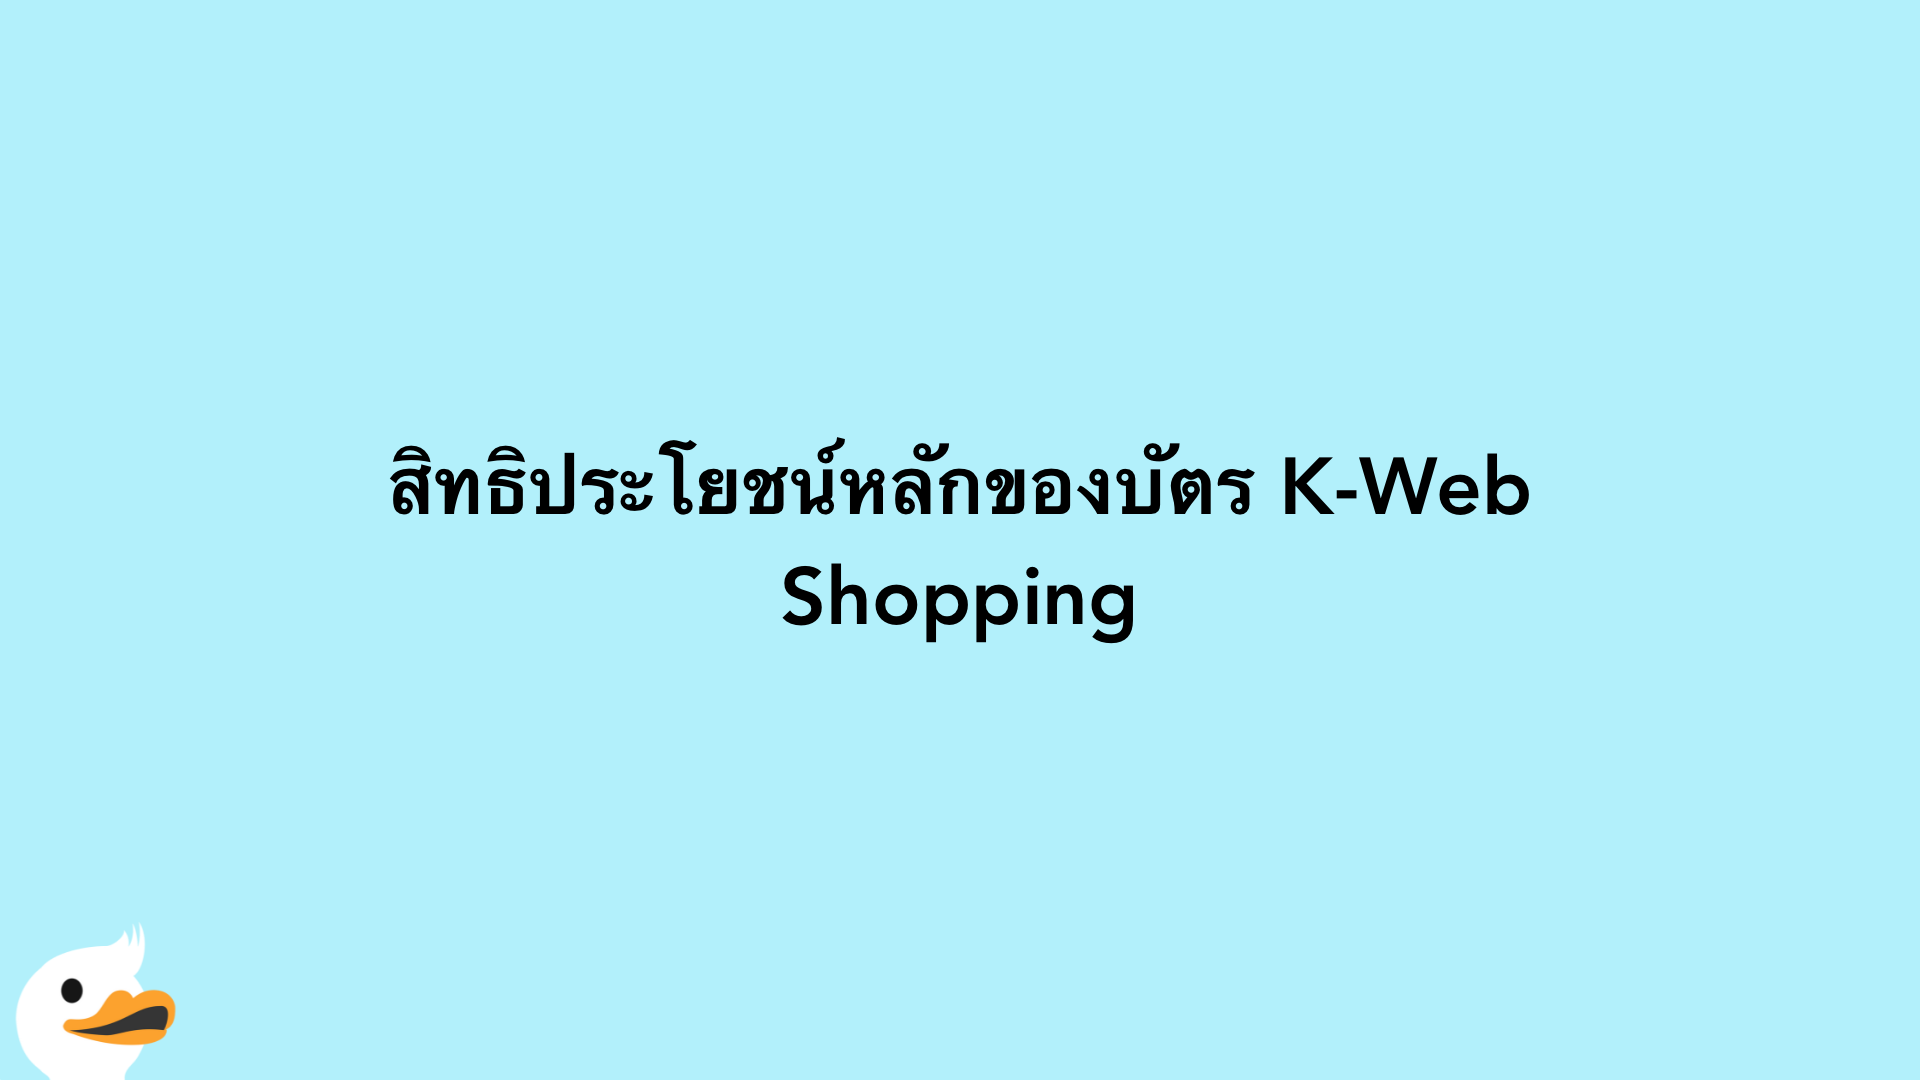 สิทธิประโยชน์หลักของบัตร K-Web Shopping